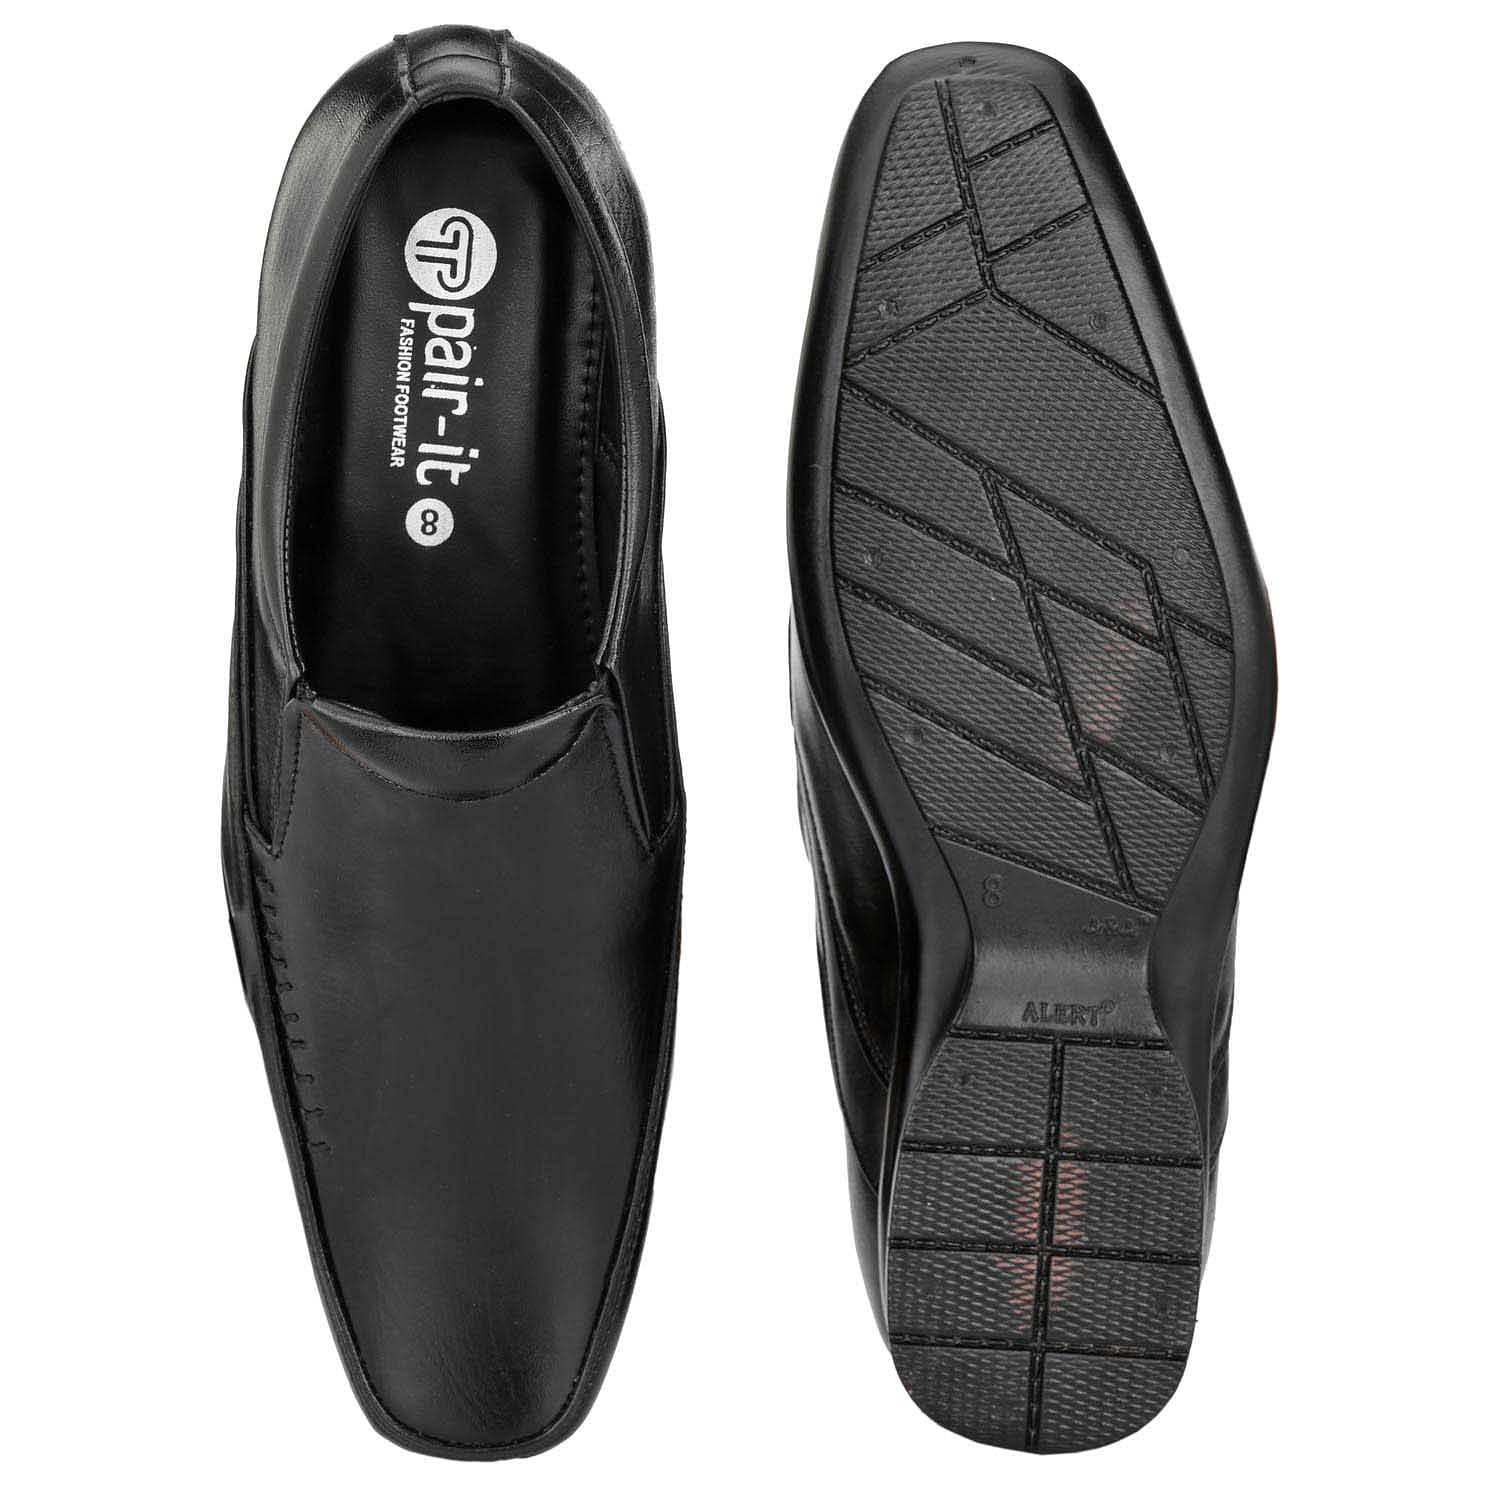 Pair-it Men moccasin Formal Shoes -LZ-RYDER-116- Black